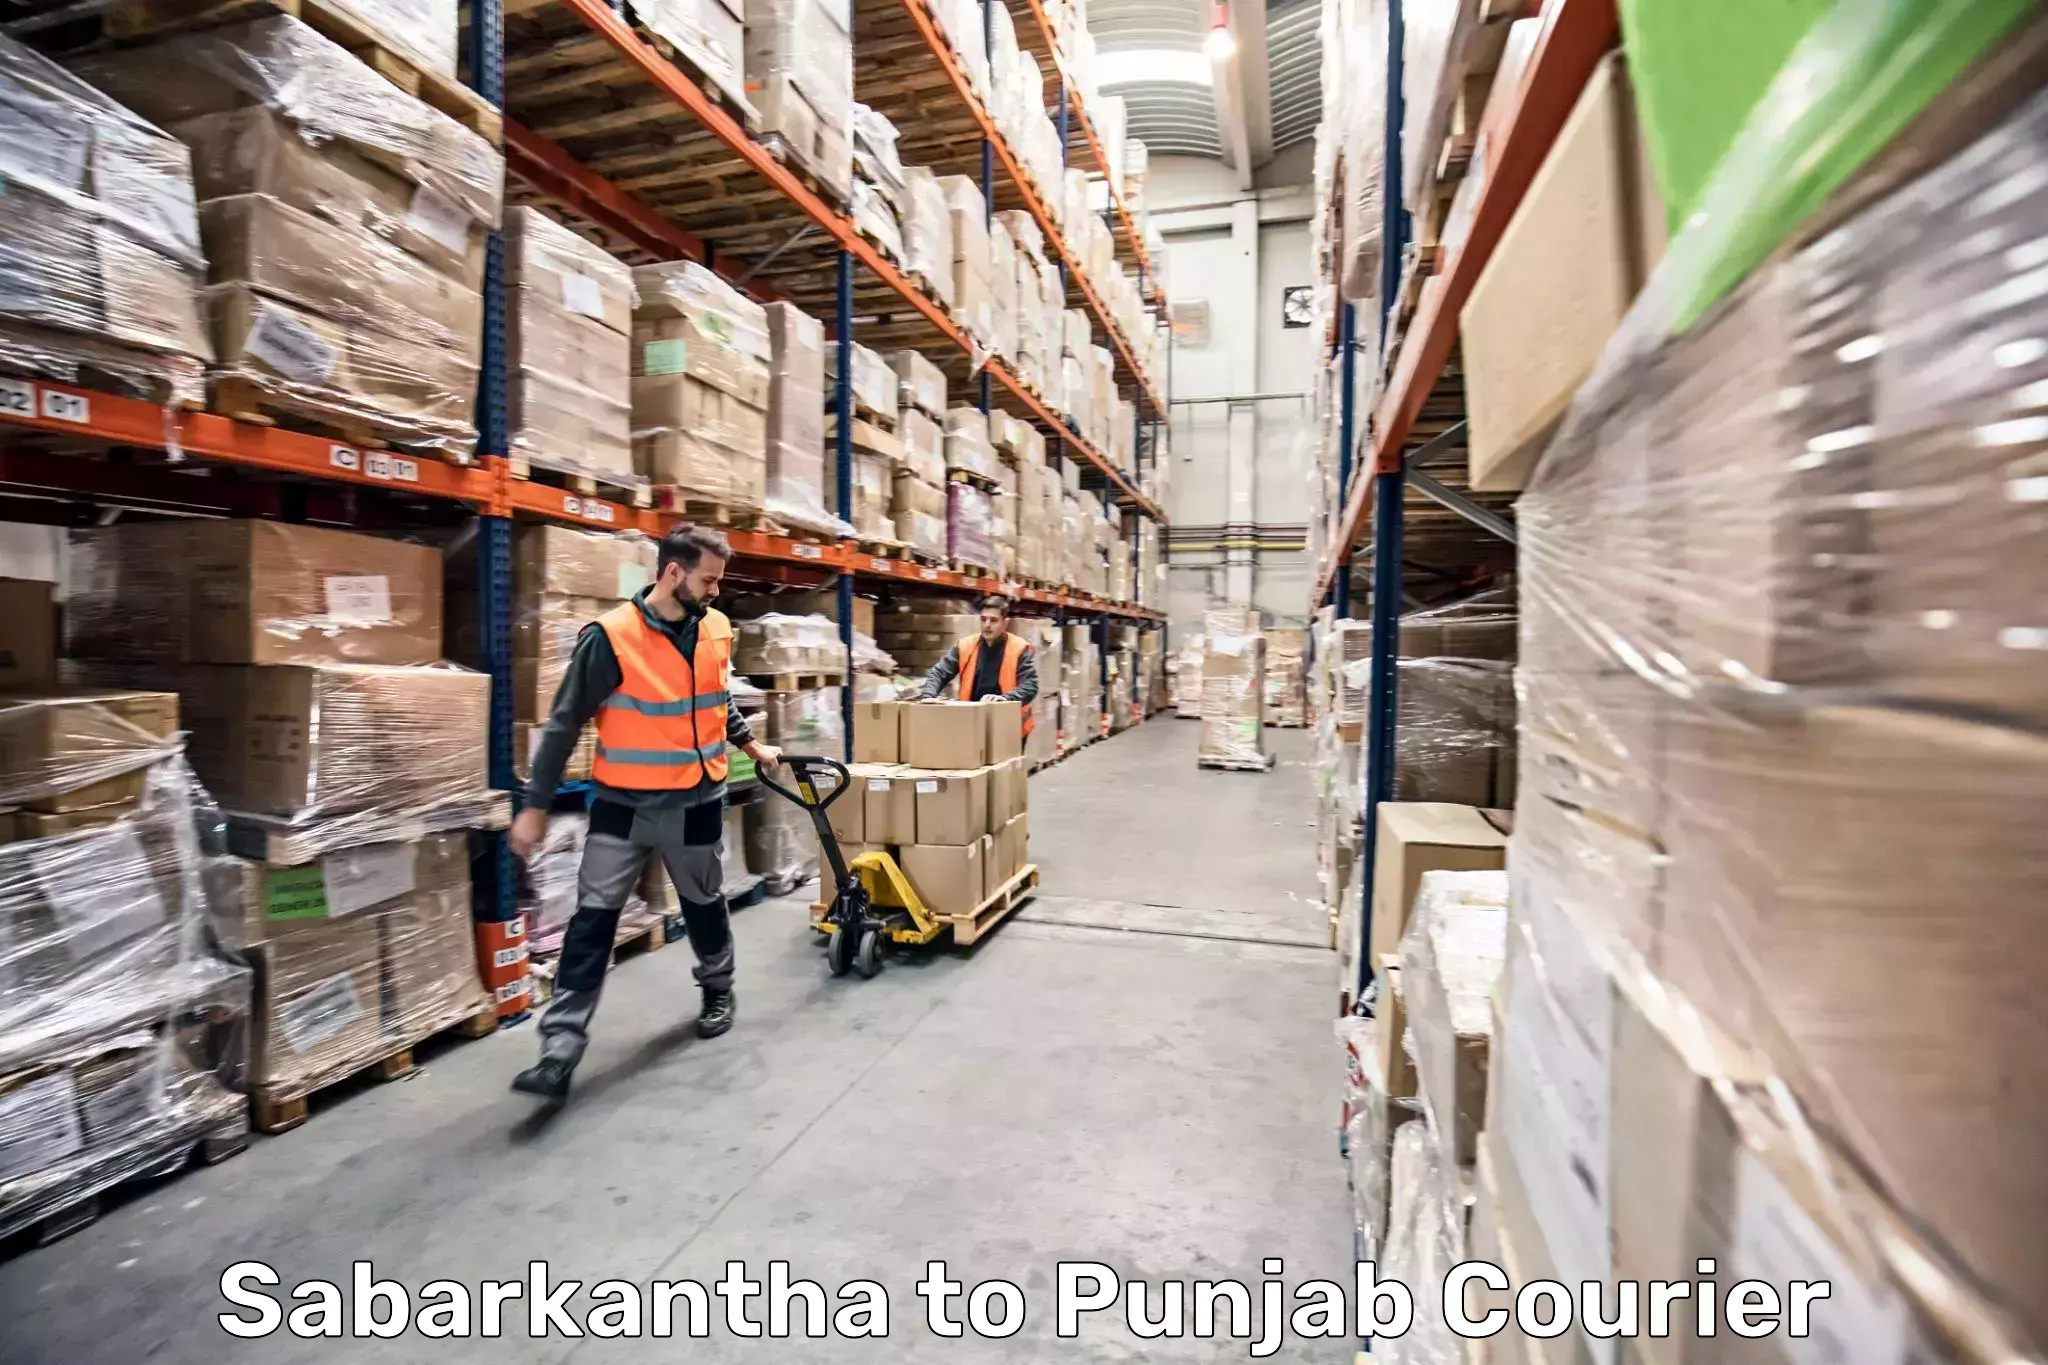 Baggage shipping experts Sabarkantha to Raikot